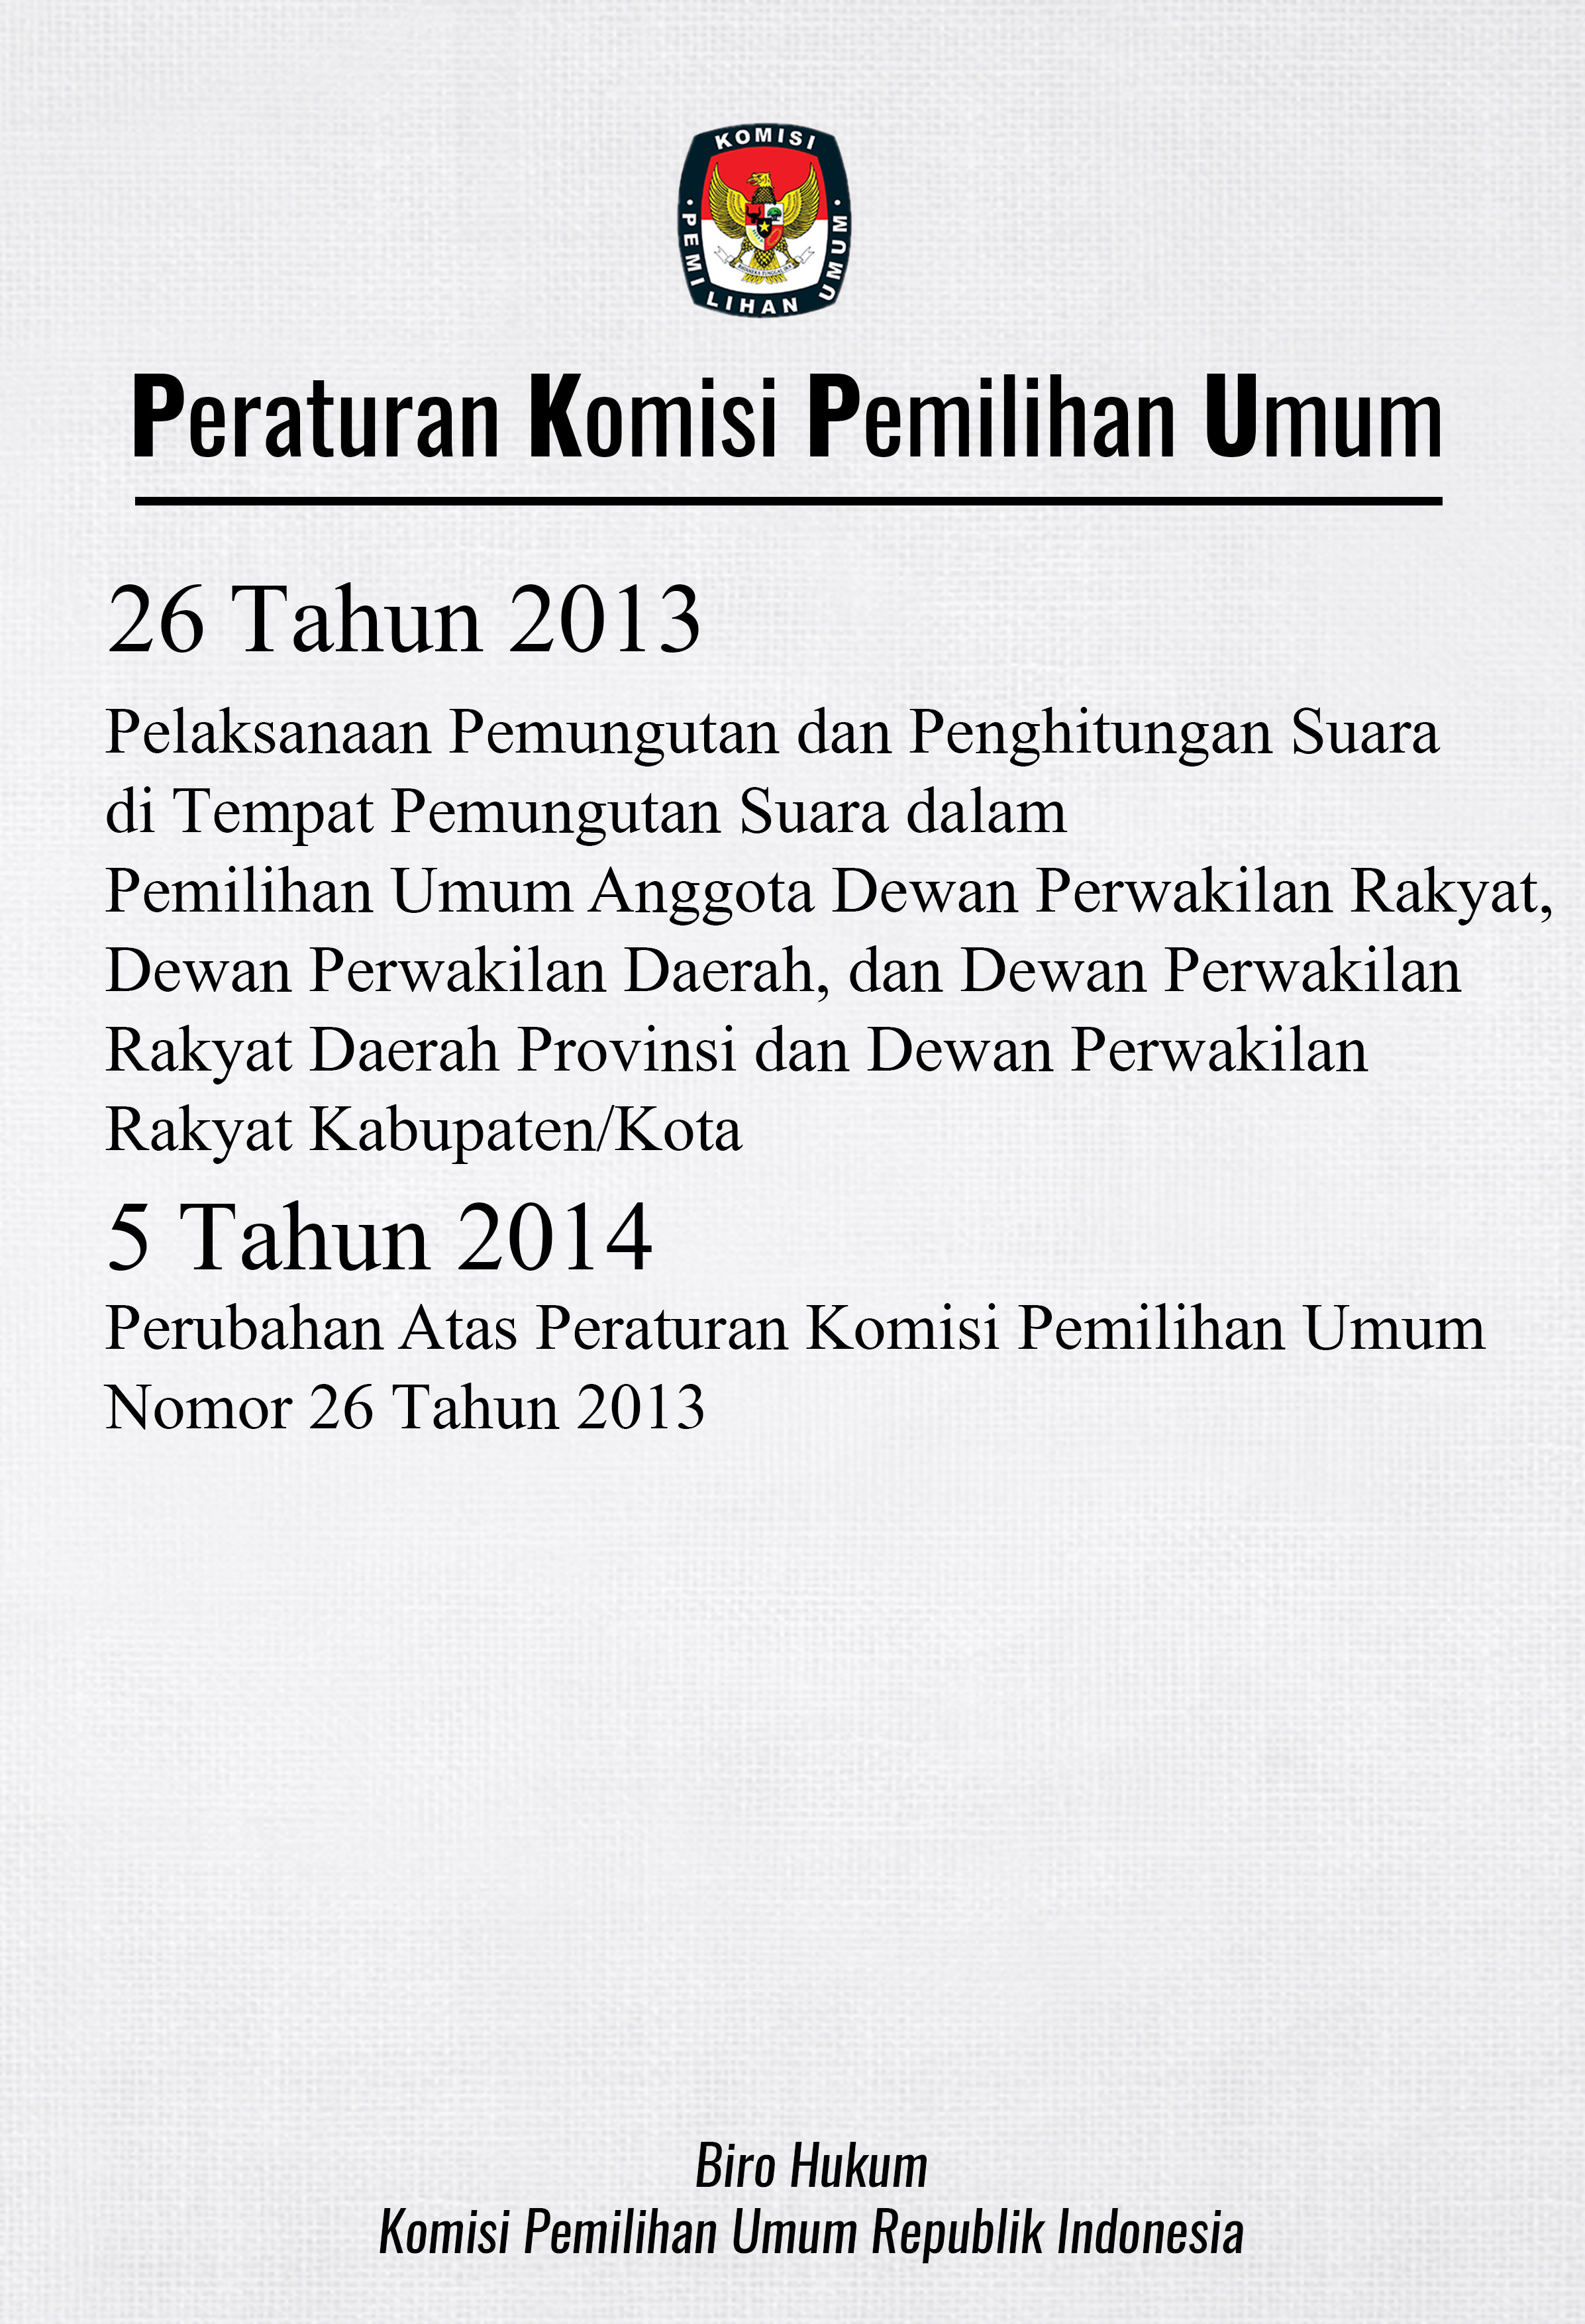 Peraturan komisi pemilihan umum nomor 26 tahun 2013 dan 5 tahun 2014